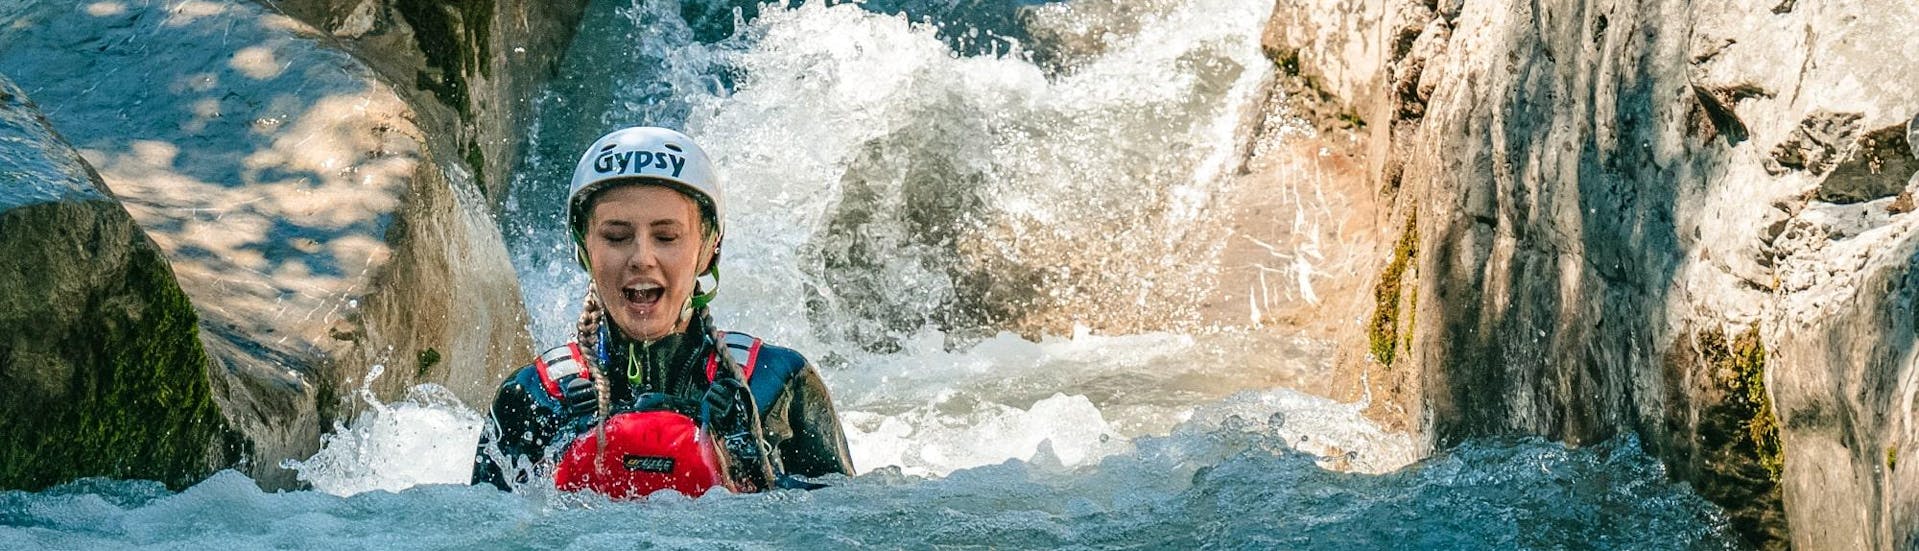 Bild einer Frau im Wasser während einer Canyoning-Aktivität in Saxeten.